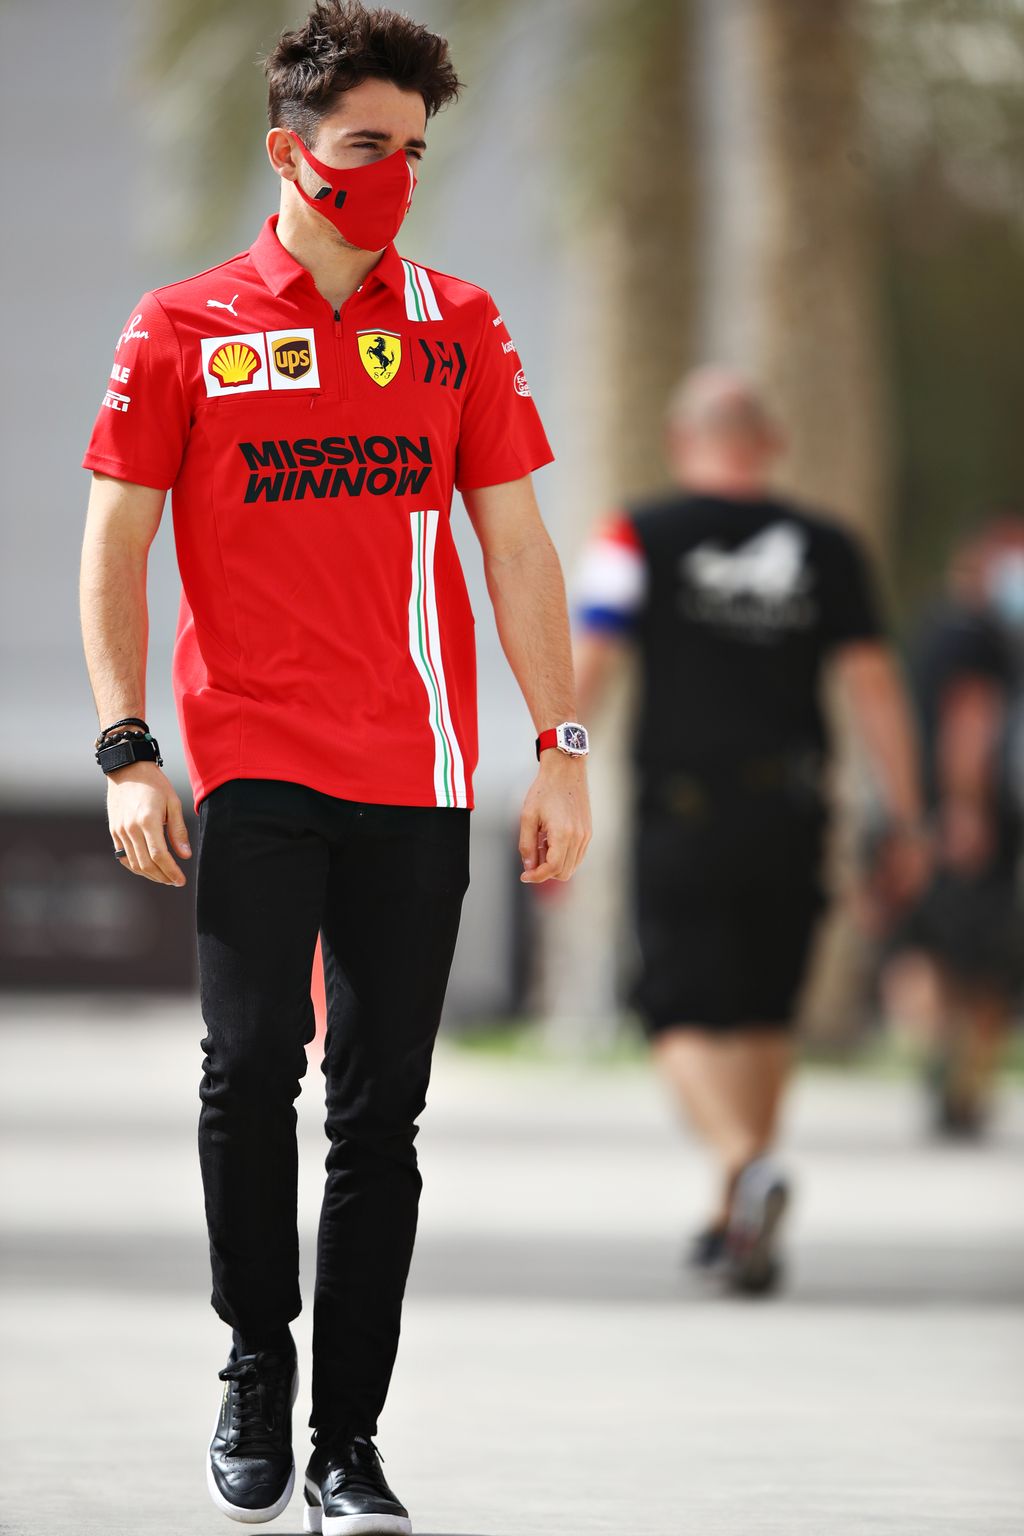 Forma-1, Charles Leclerc, Ferrari, Bahrein teszt 2. nap, 2021 